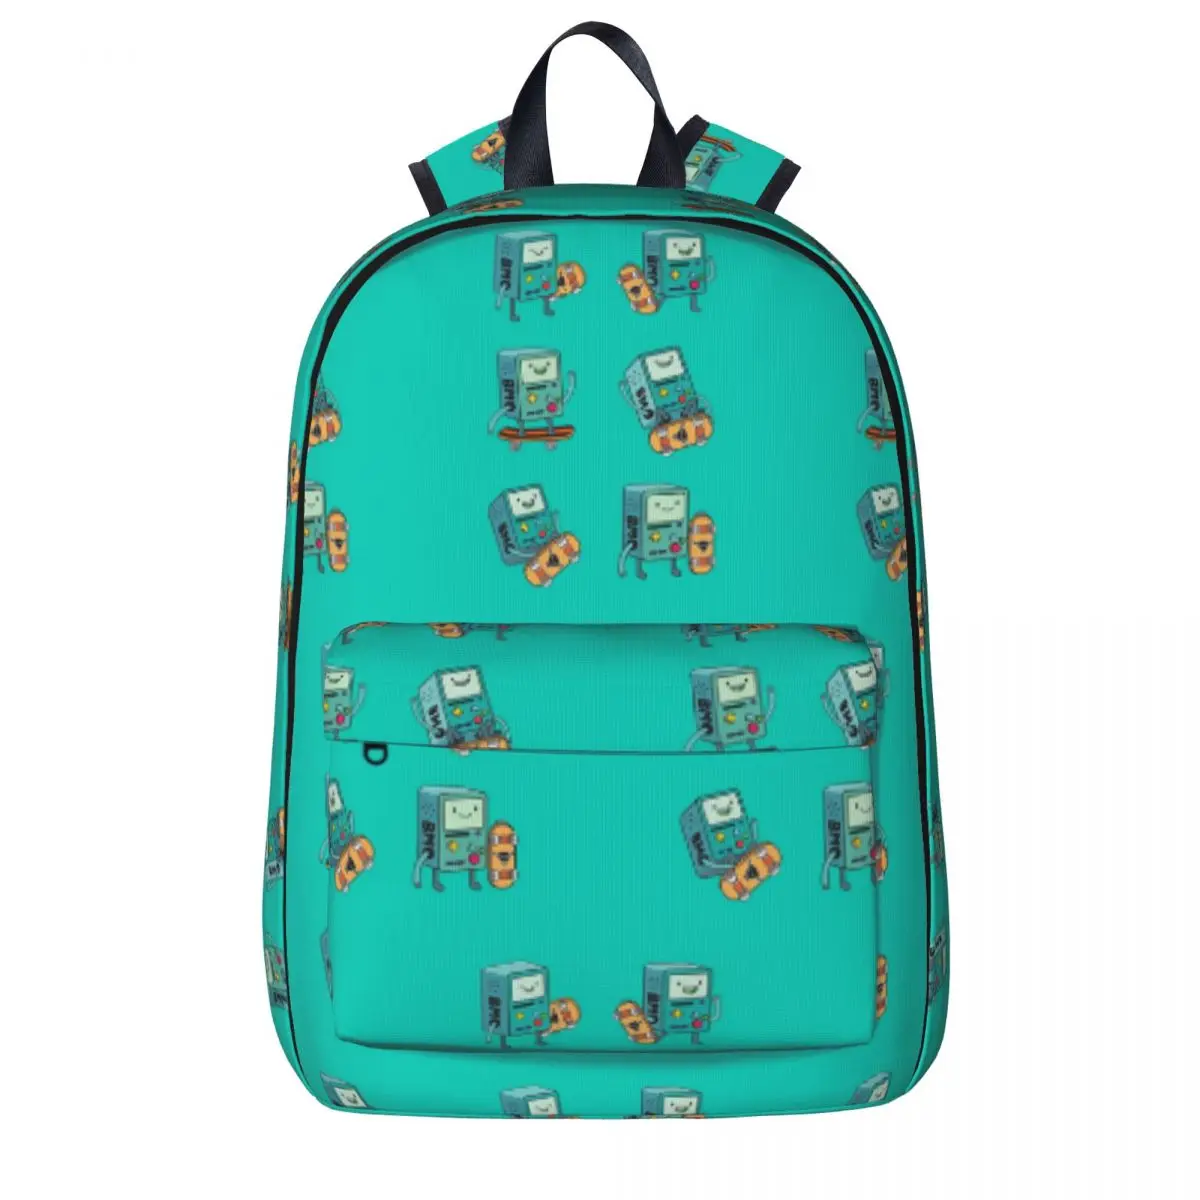 

BMO Backpacks Large Capacity Student Book bag Shoulder Bag Laptop Rucksack Fashion Travel Rucksack Children School Bag